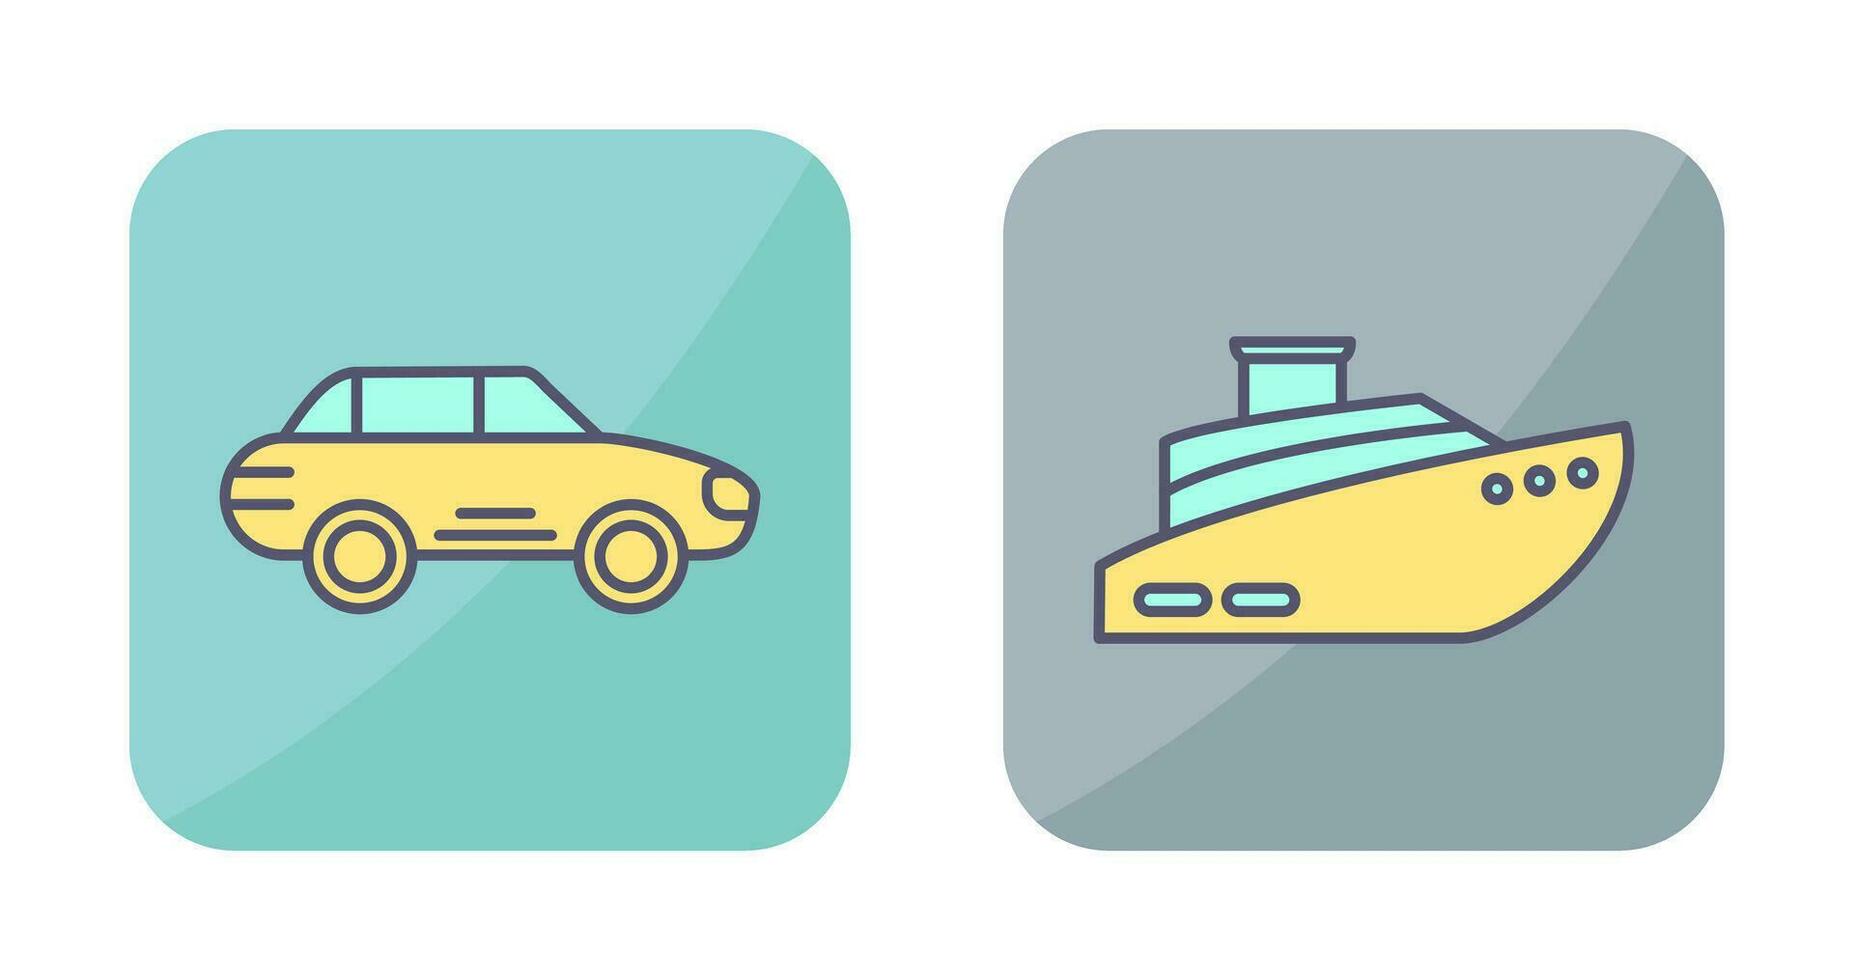 Car and Ship Icon vector